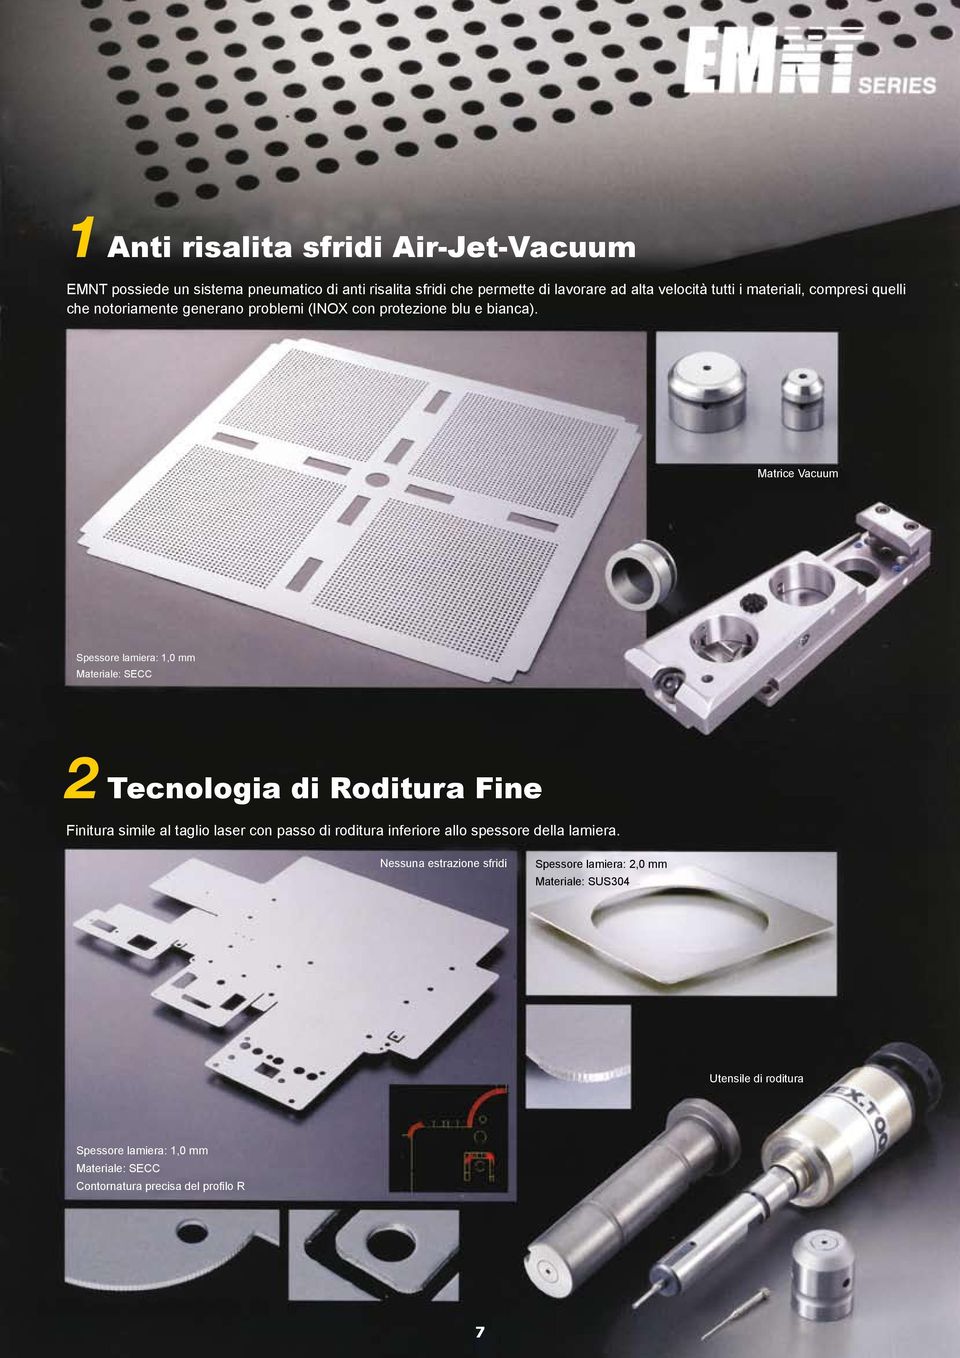 Matrice Vacuum Spessore lamiera: 1,0 mm Materiale: SECC 2 Tecnologia di Roditura Fine Finitura simile al taglio laser con passo di roditura